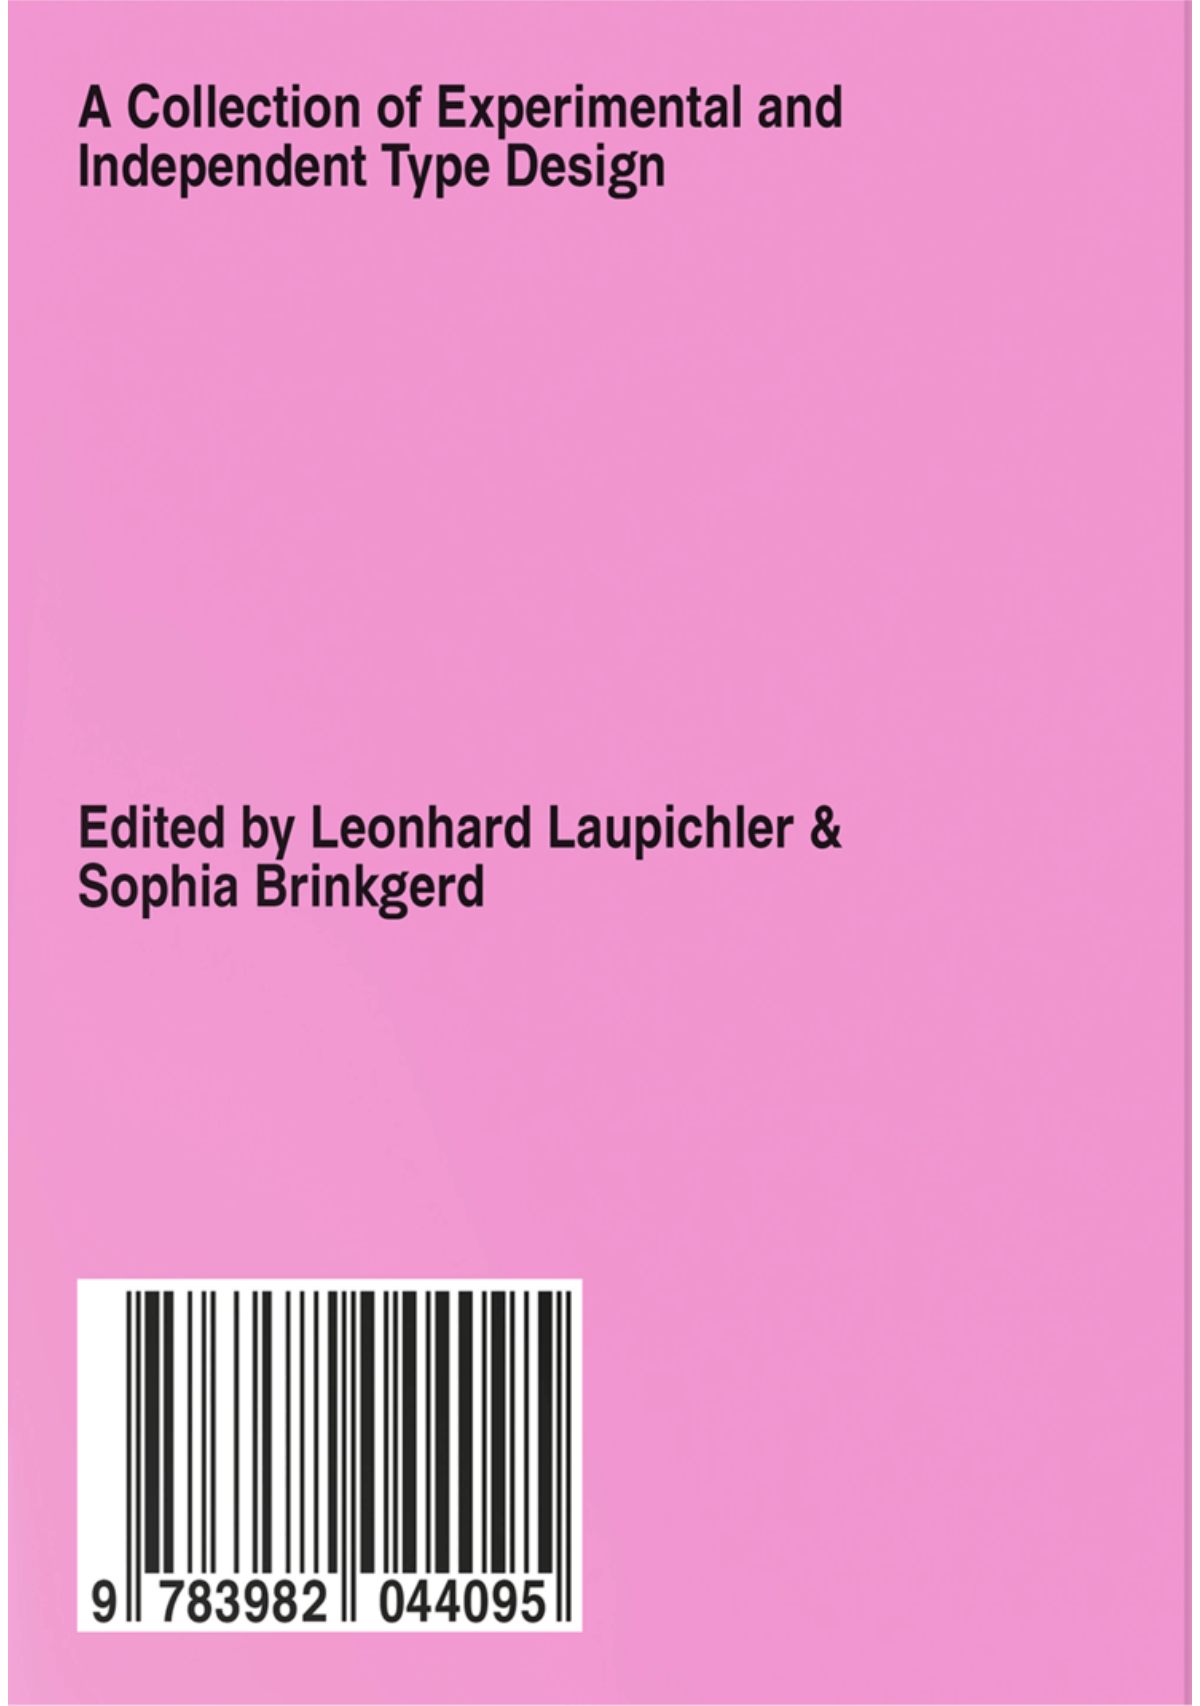 Leonhard Laupichler, Sophia Brinkgerd — New Aesthetic 3